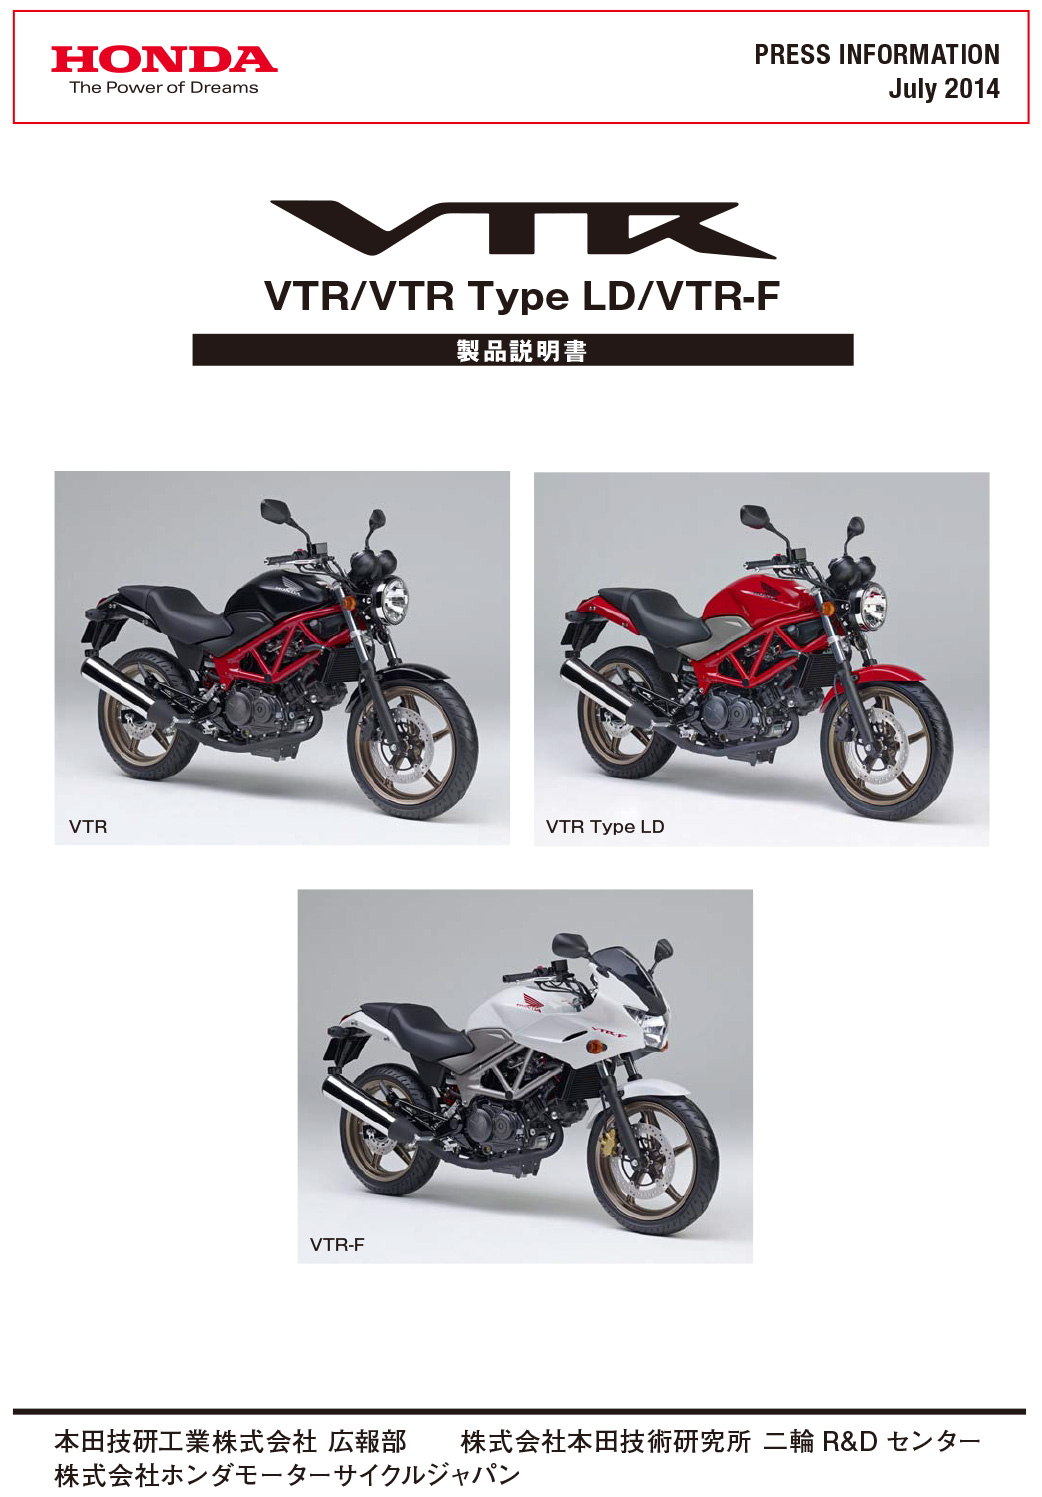 VTR/VTR Type LD/VTR-F